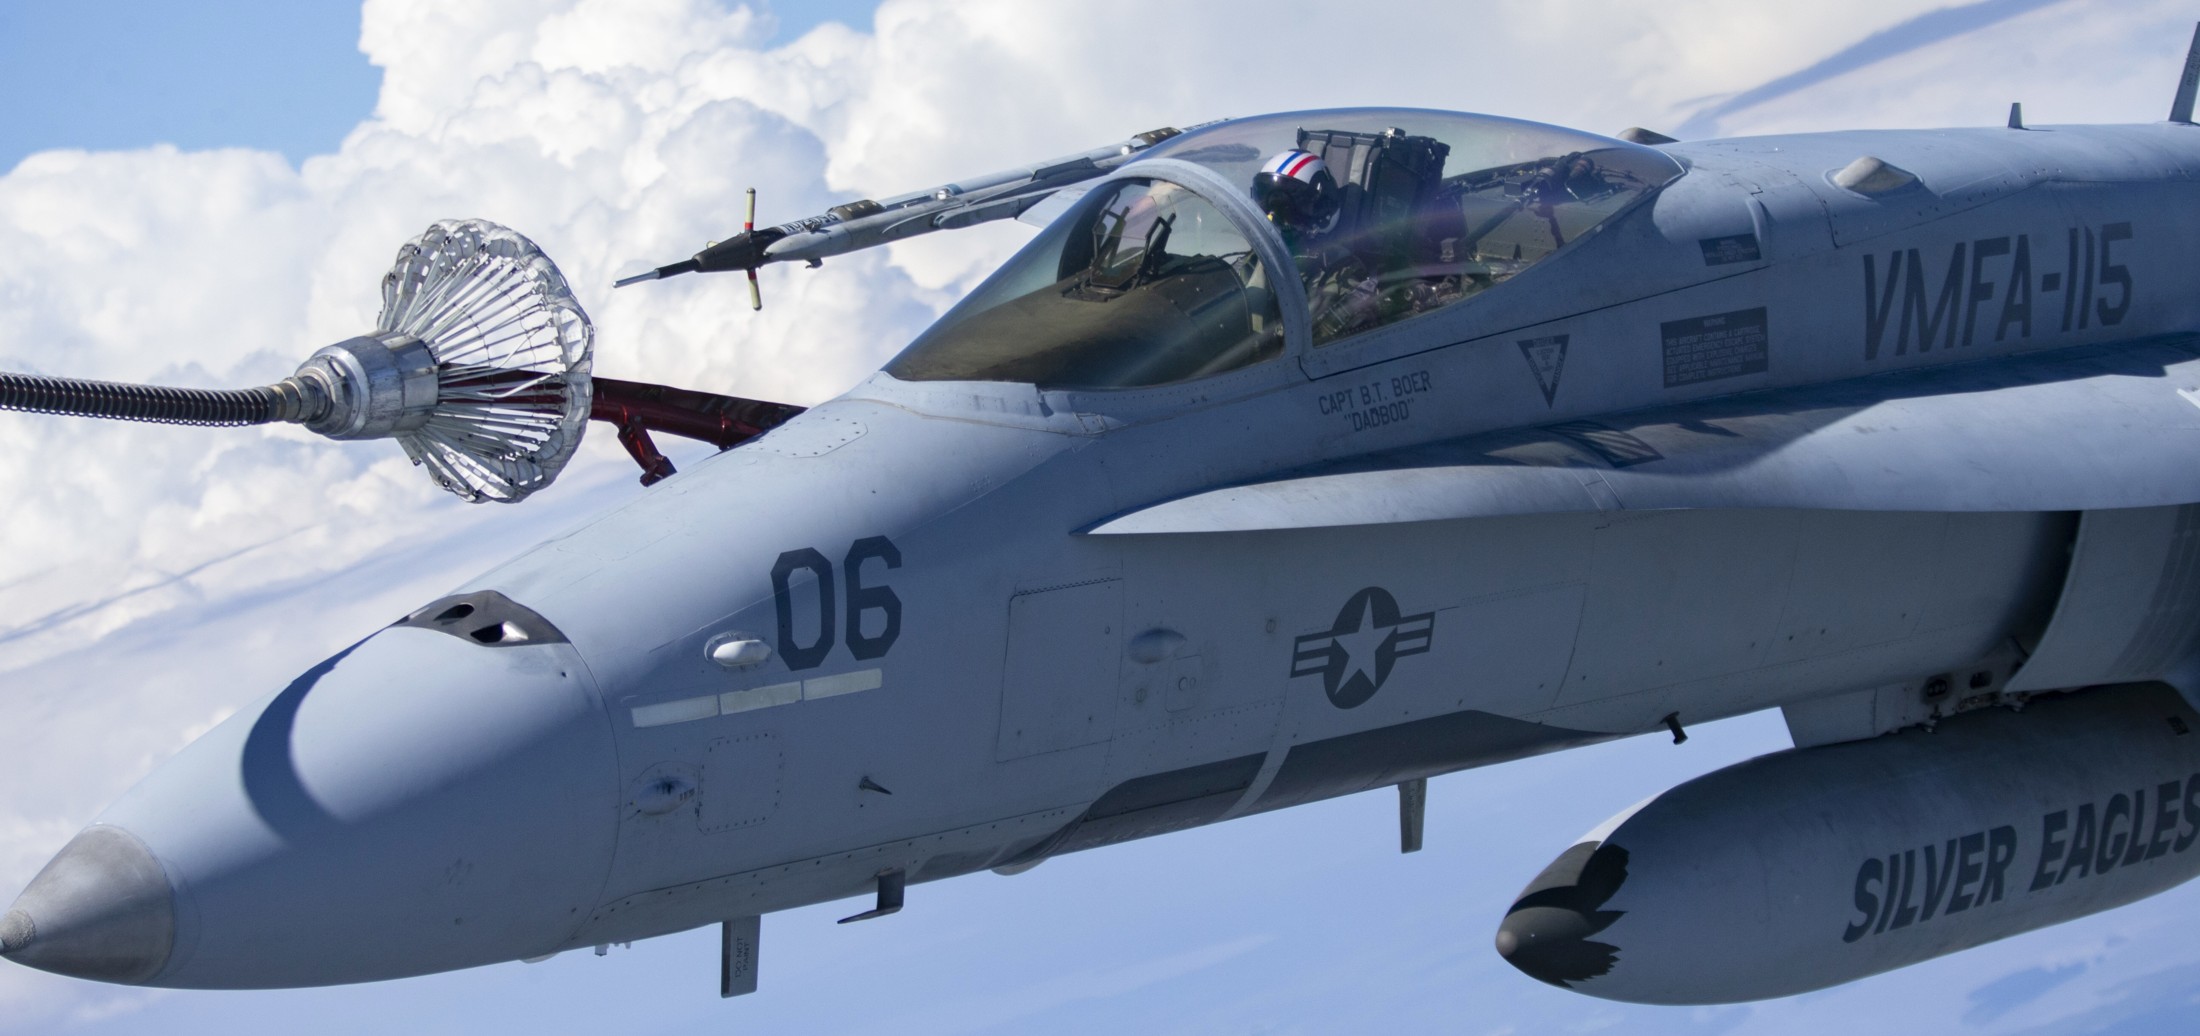 vmfa-115 silver eagles marine fighter attack squadron usmc f/a-18c hornet 220